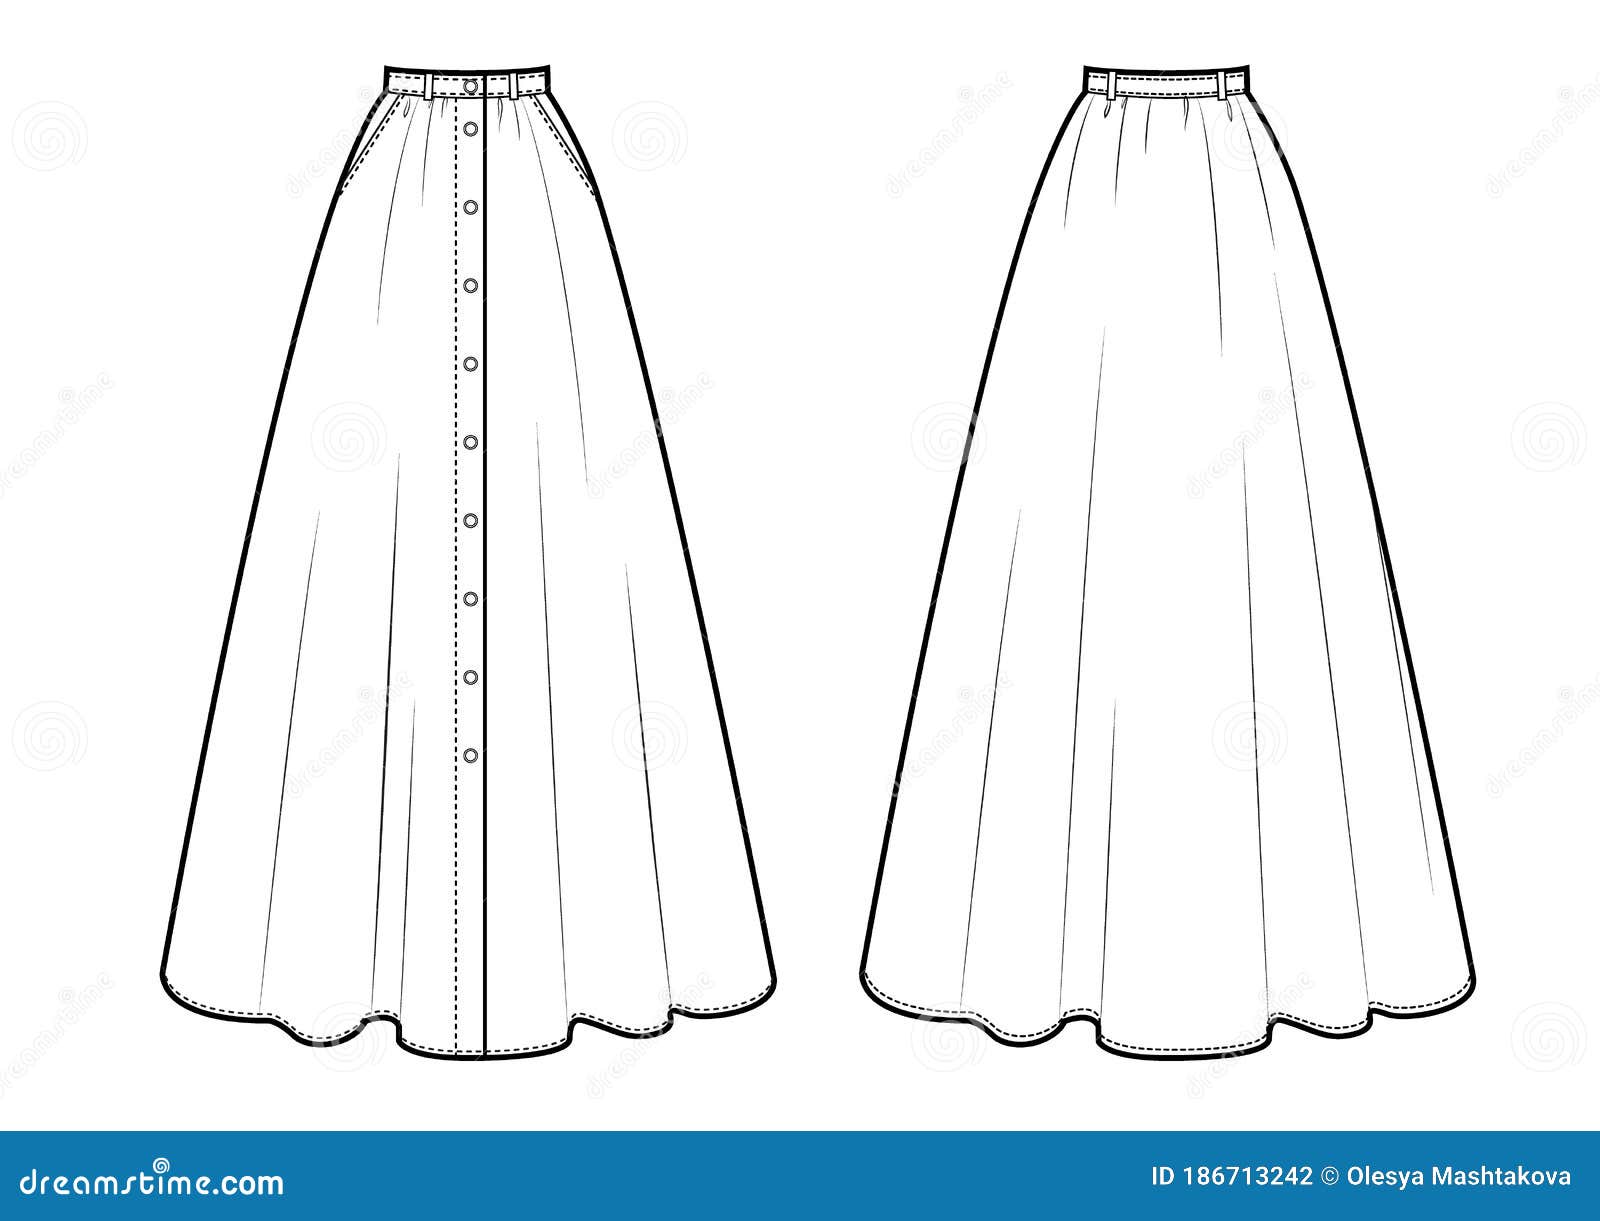 Maxi Skirt Sketch Vector Illustration Stock Illustration - Illustration of blackandwhite ...